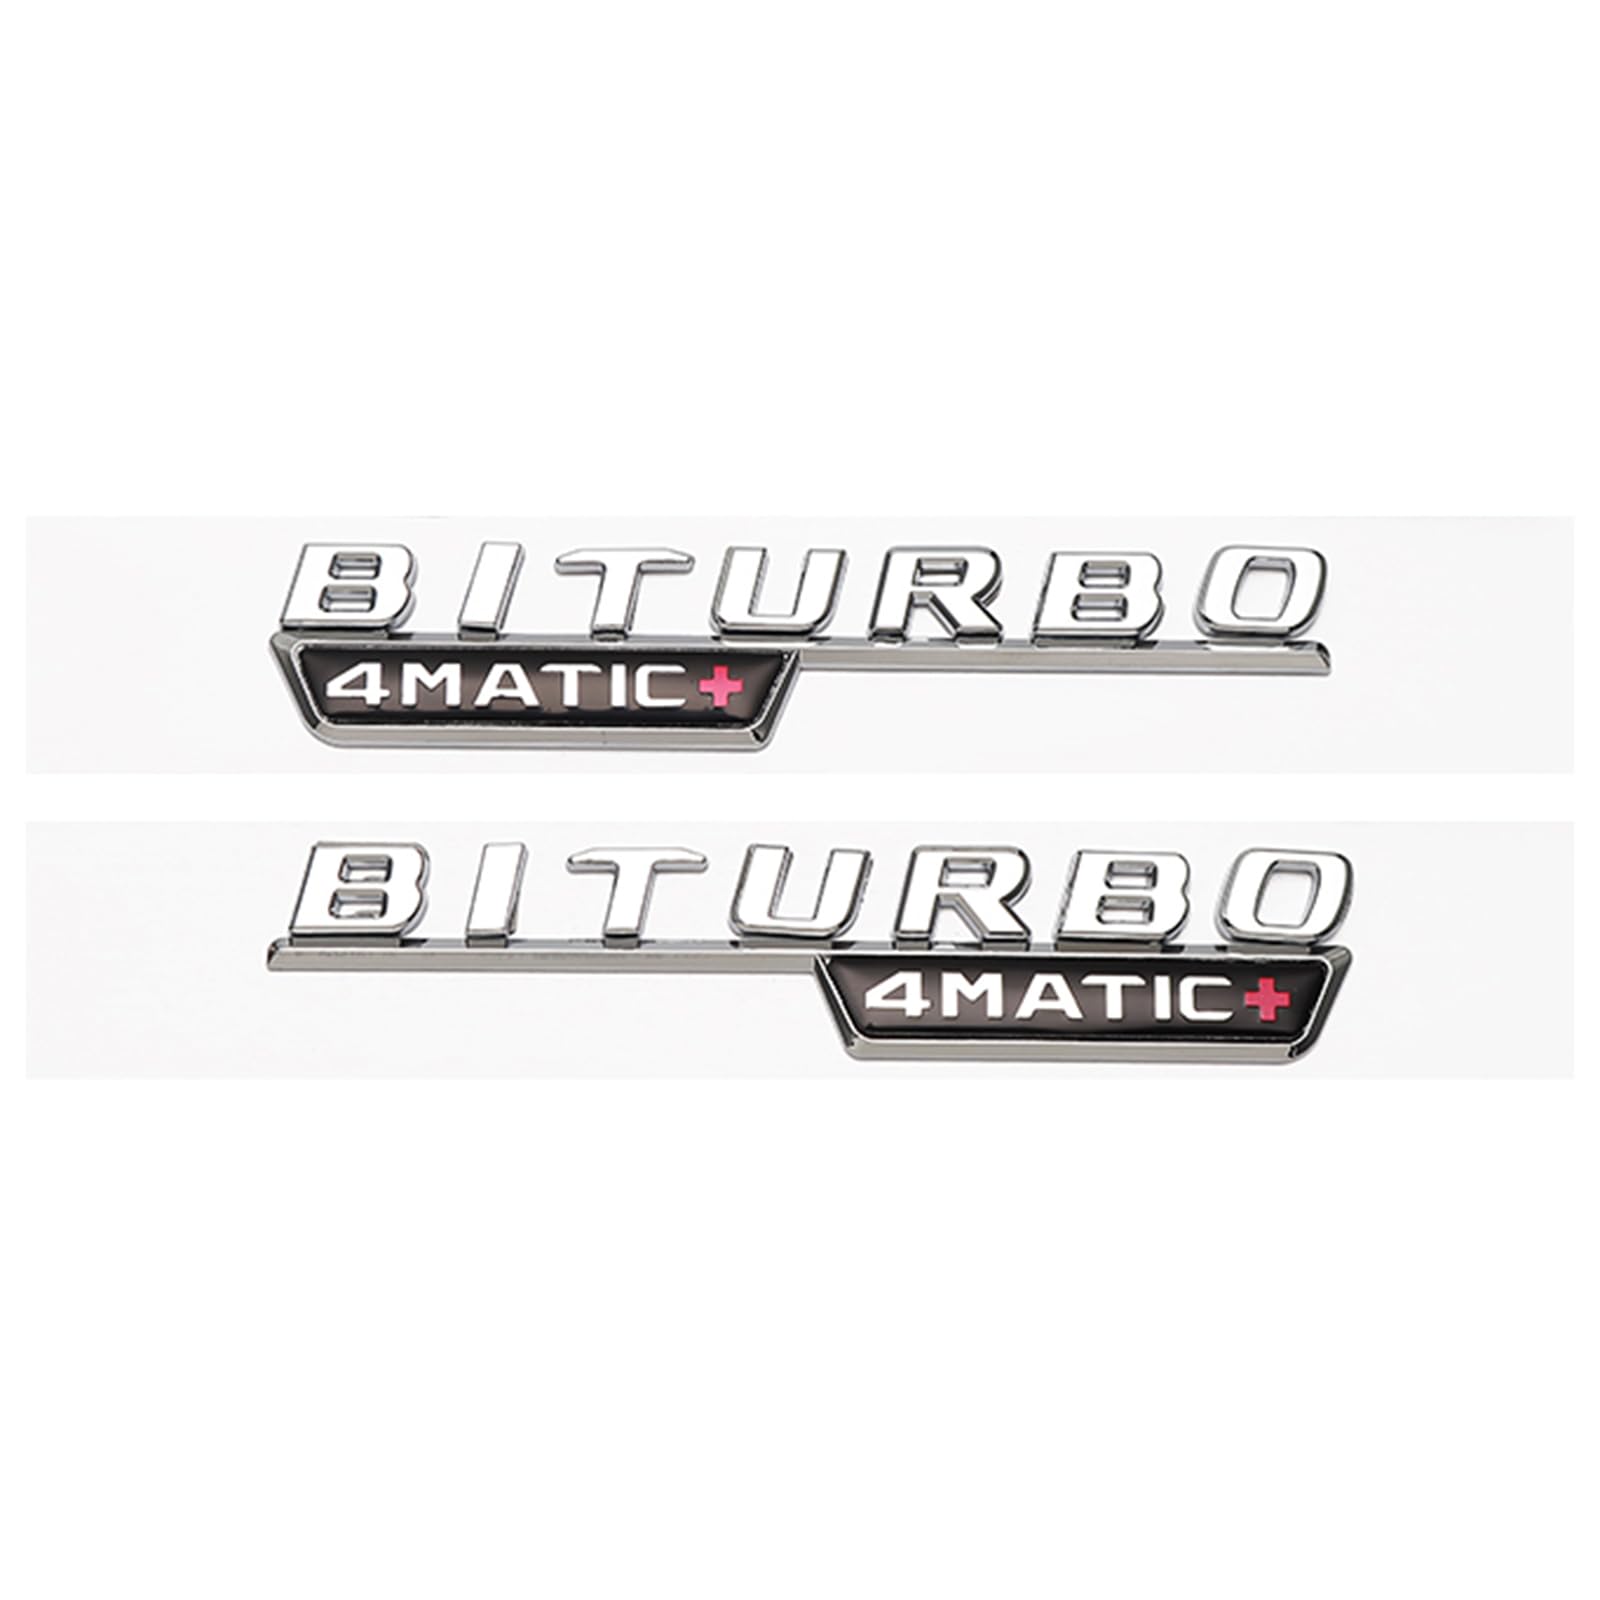 Auto Metall Emblem Badge für Ben-z V8 BITURBO/Turbo 4MATIC+, Selbstklebend Karosserie Aufkleber Autoaufkleber Auto Dekoration Zubehör,F von DJUNA